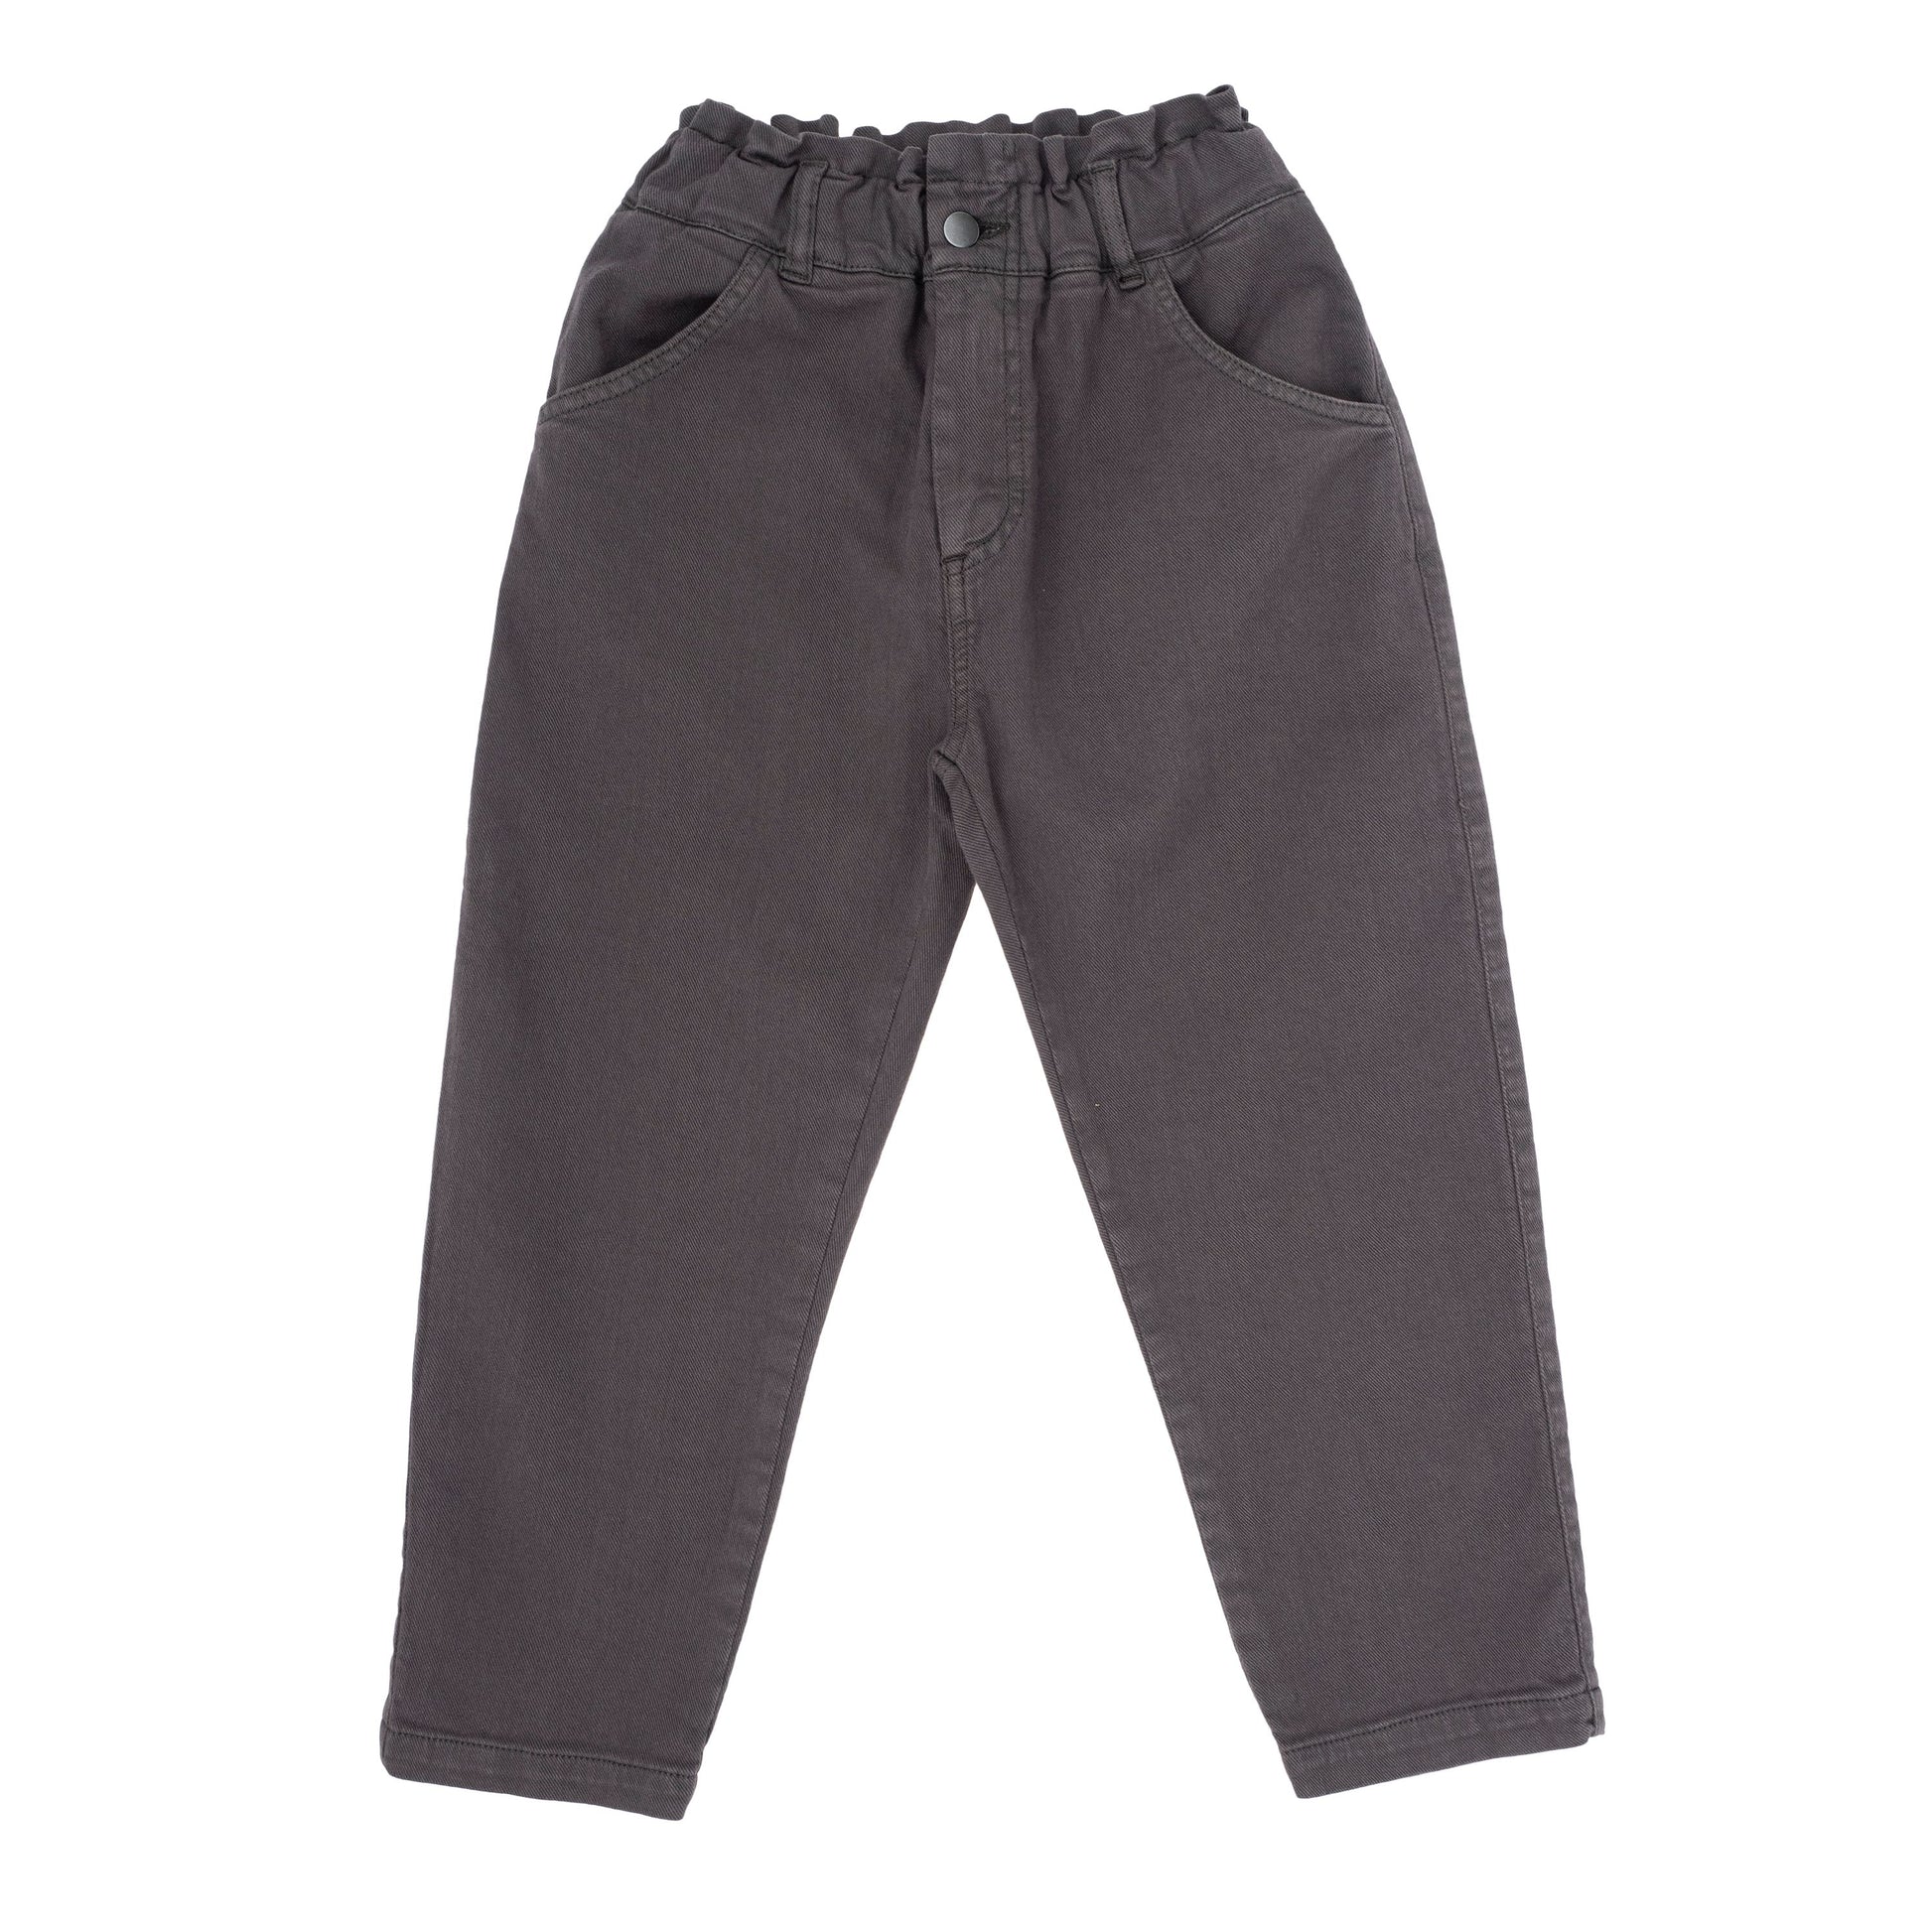 broek jeans grijs Tocoto vintage 100% organisch katoen fairtrade gemaakt babykleding duurzame kinderkleding sustainable kids clothing